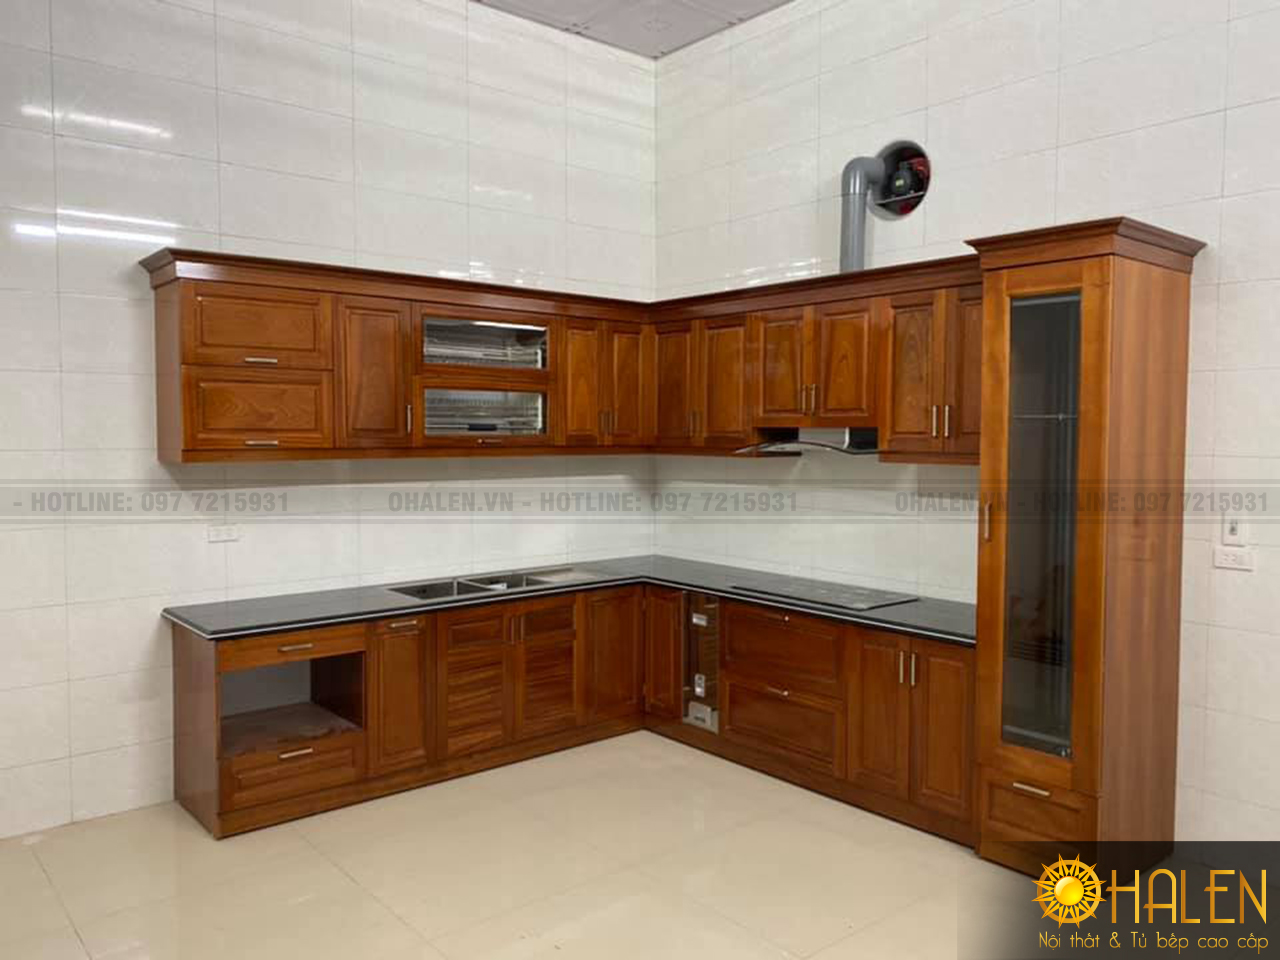 Nội thất OHALEN cung cấp các mẫu tủ bếp gỗ xoan đào đẹp có thiết kế tủ rượu sang trọng